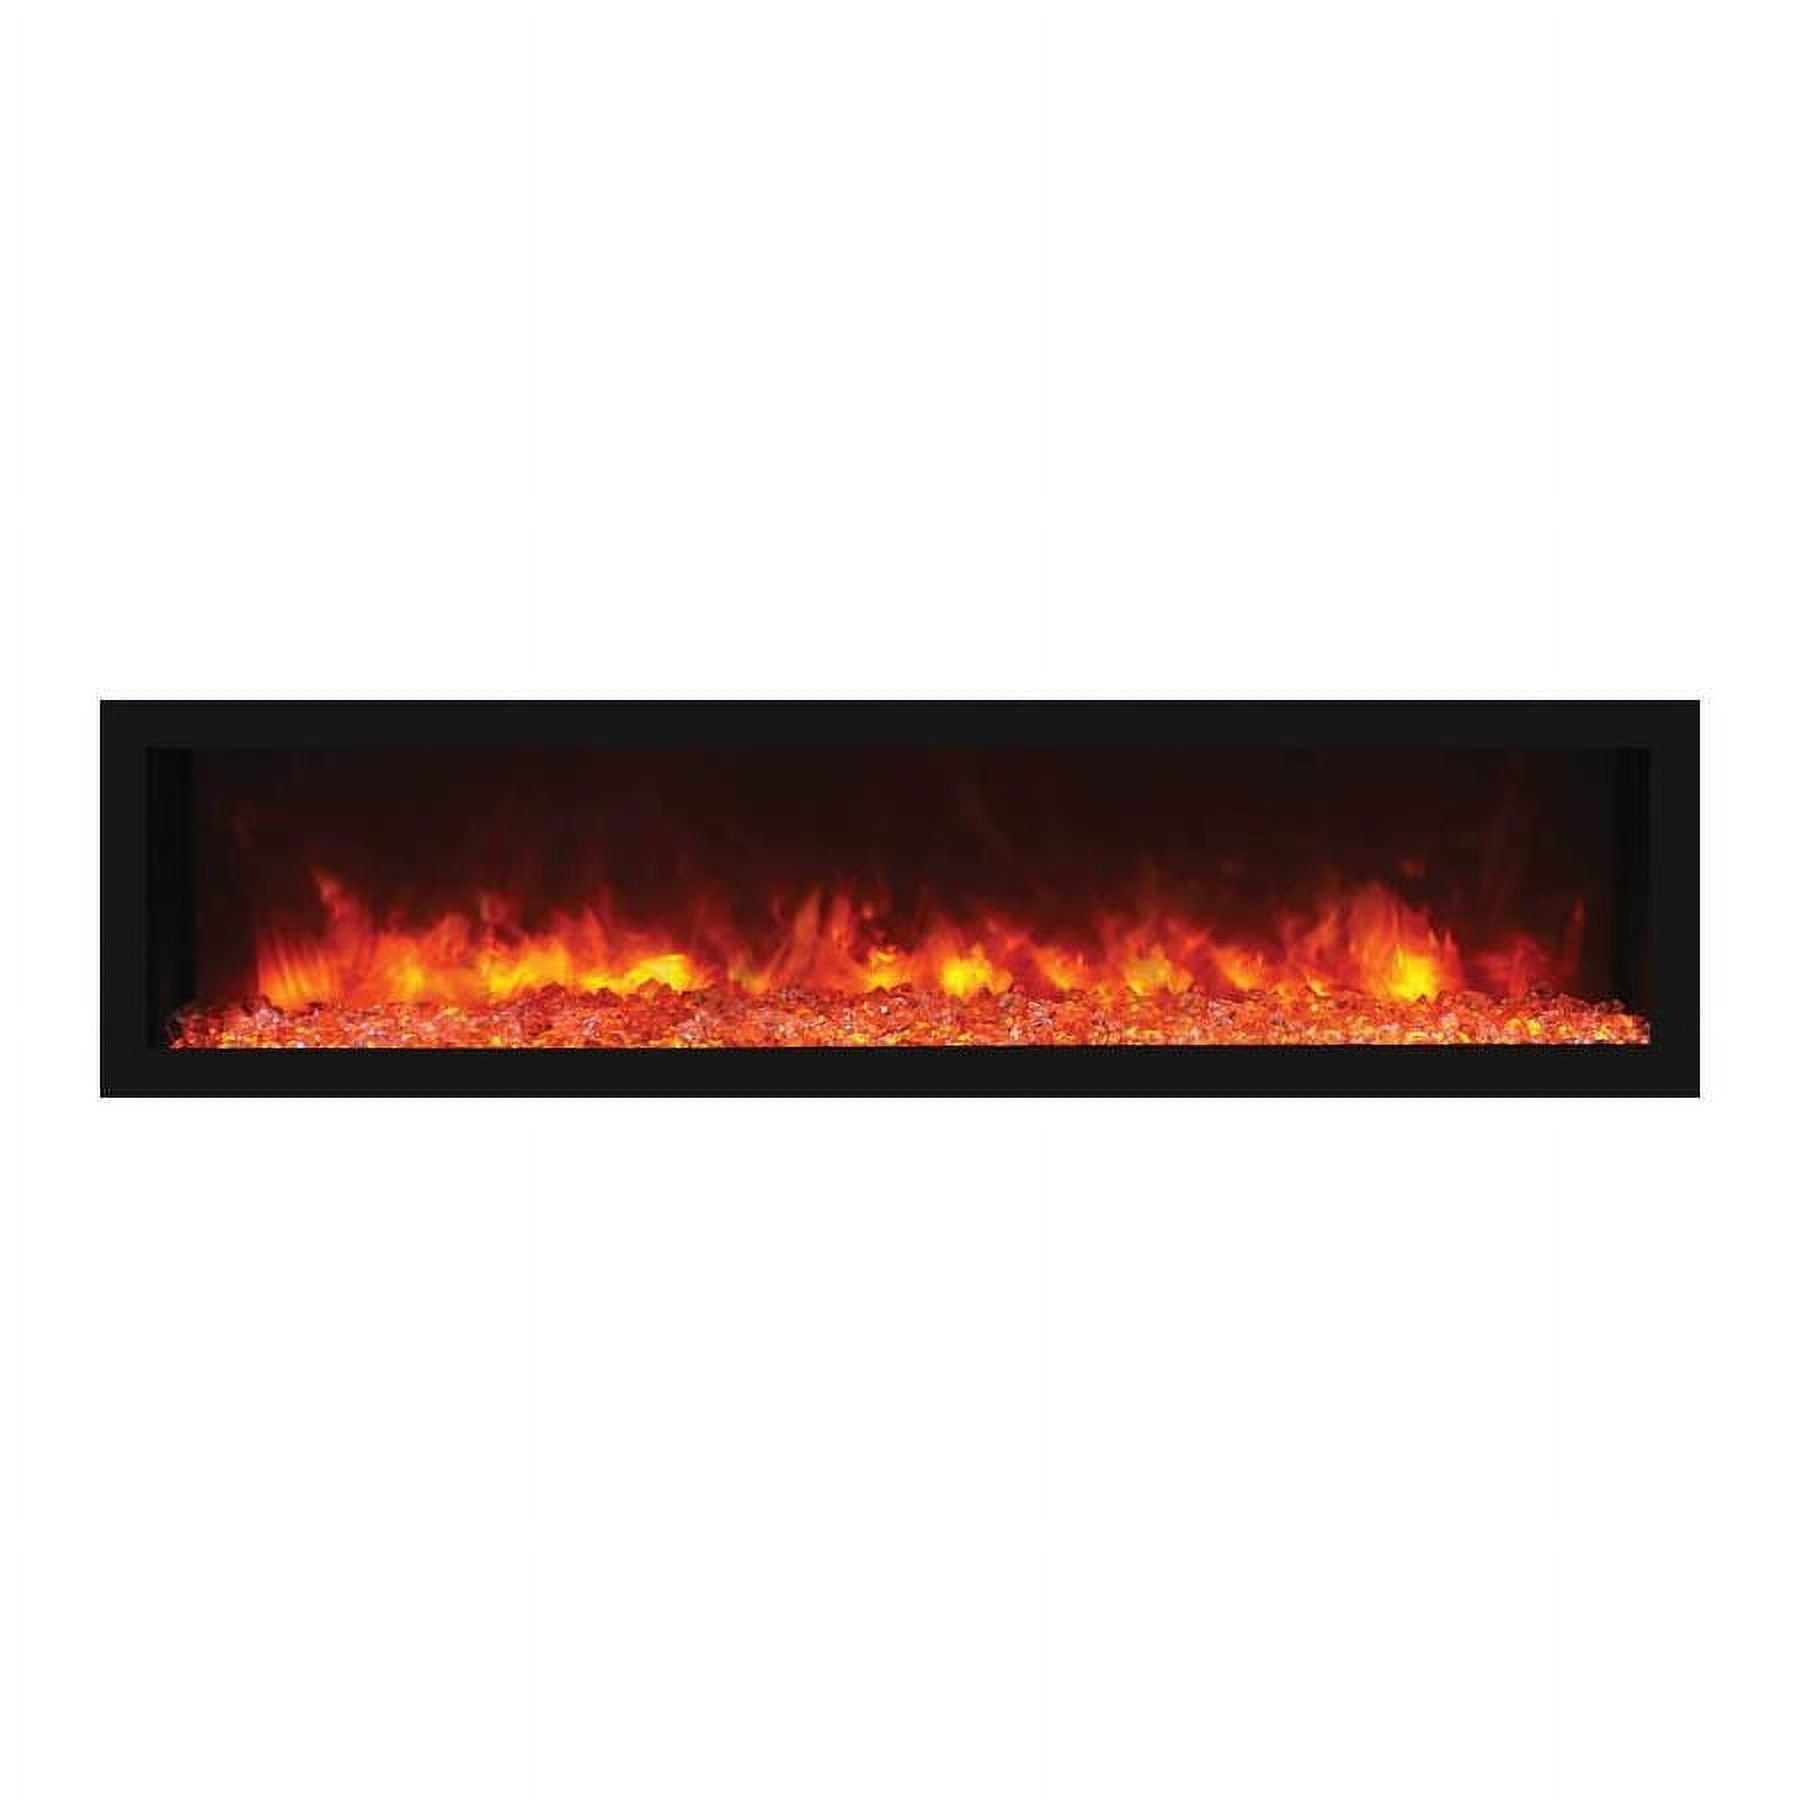 102765-de 65 In. Built-in Indoor & Outdoor Electric Fireplace With Black Steel Surround